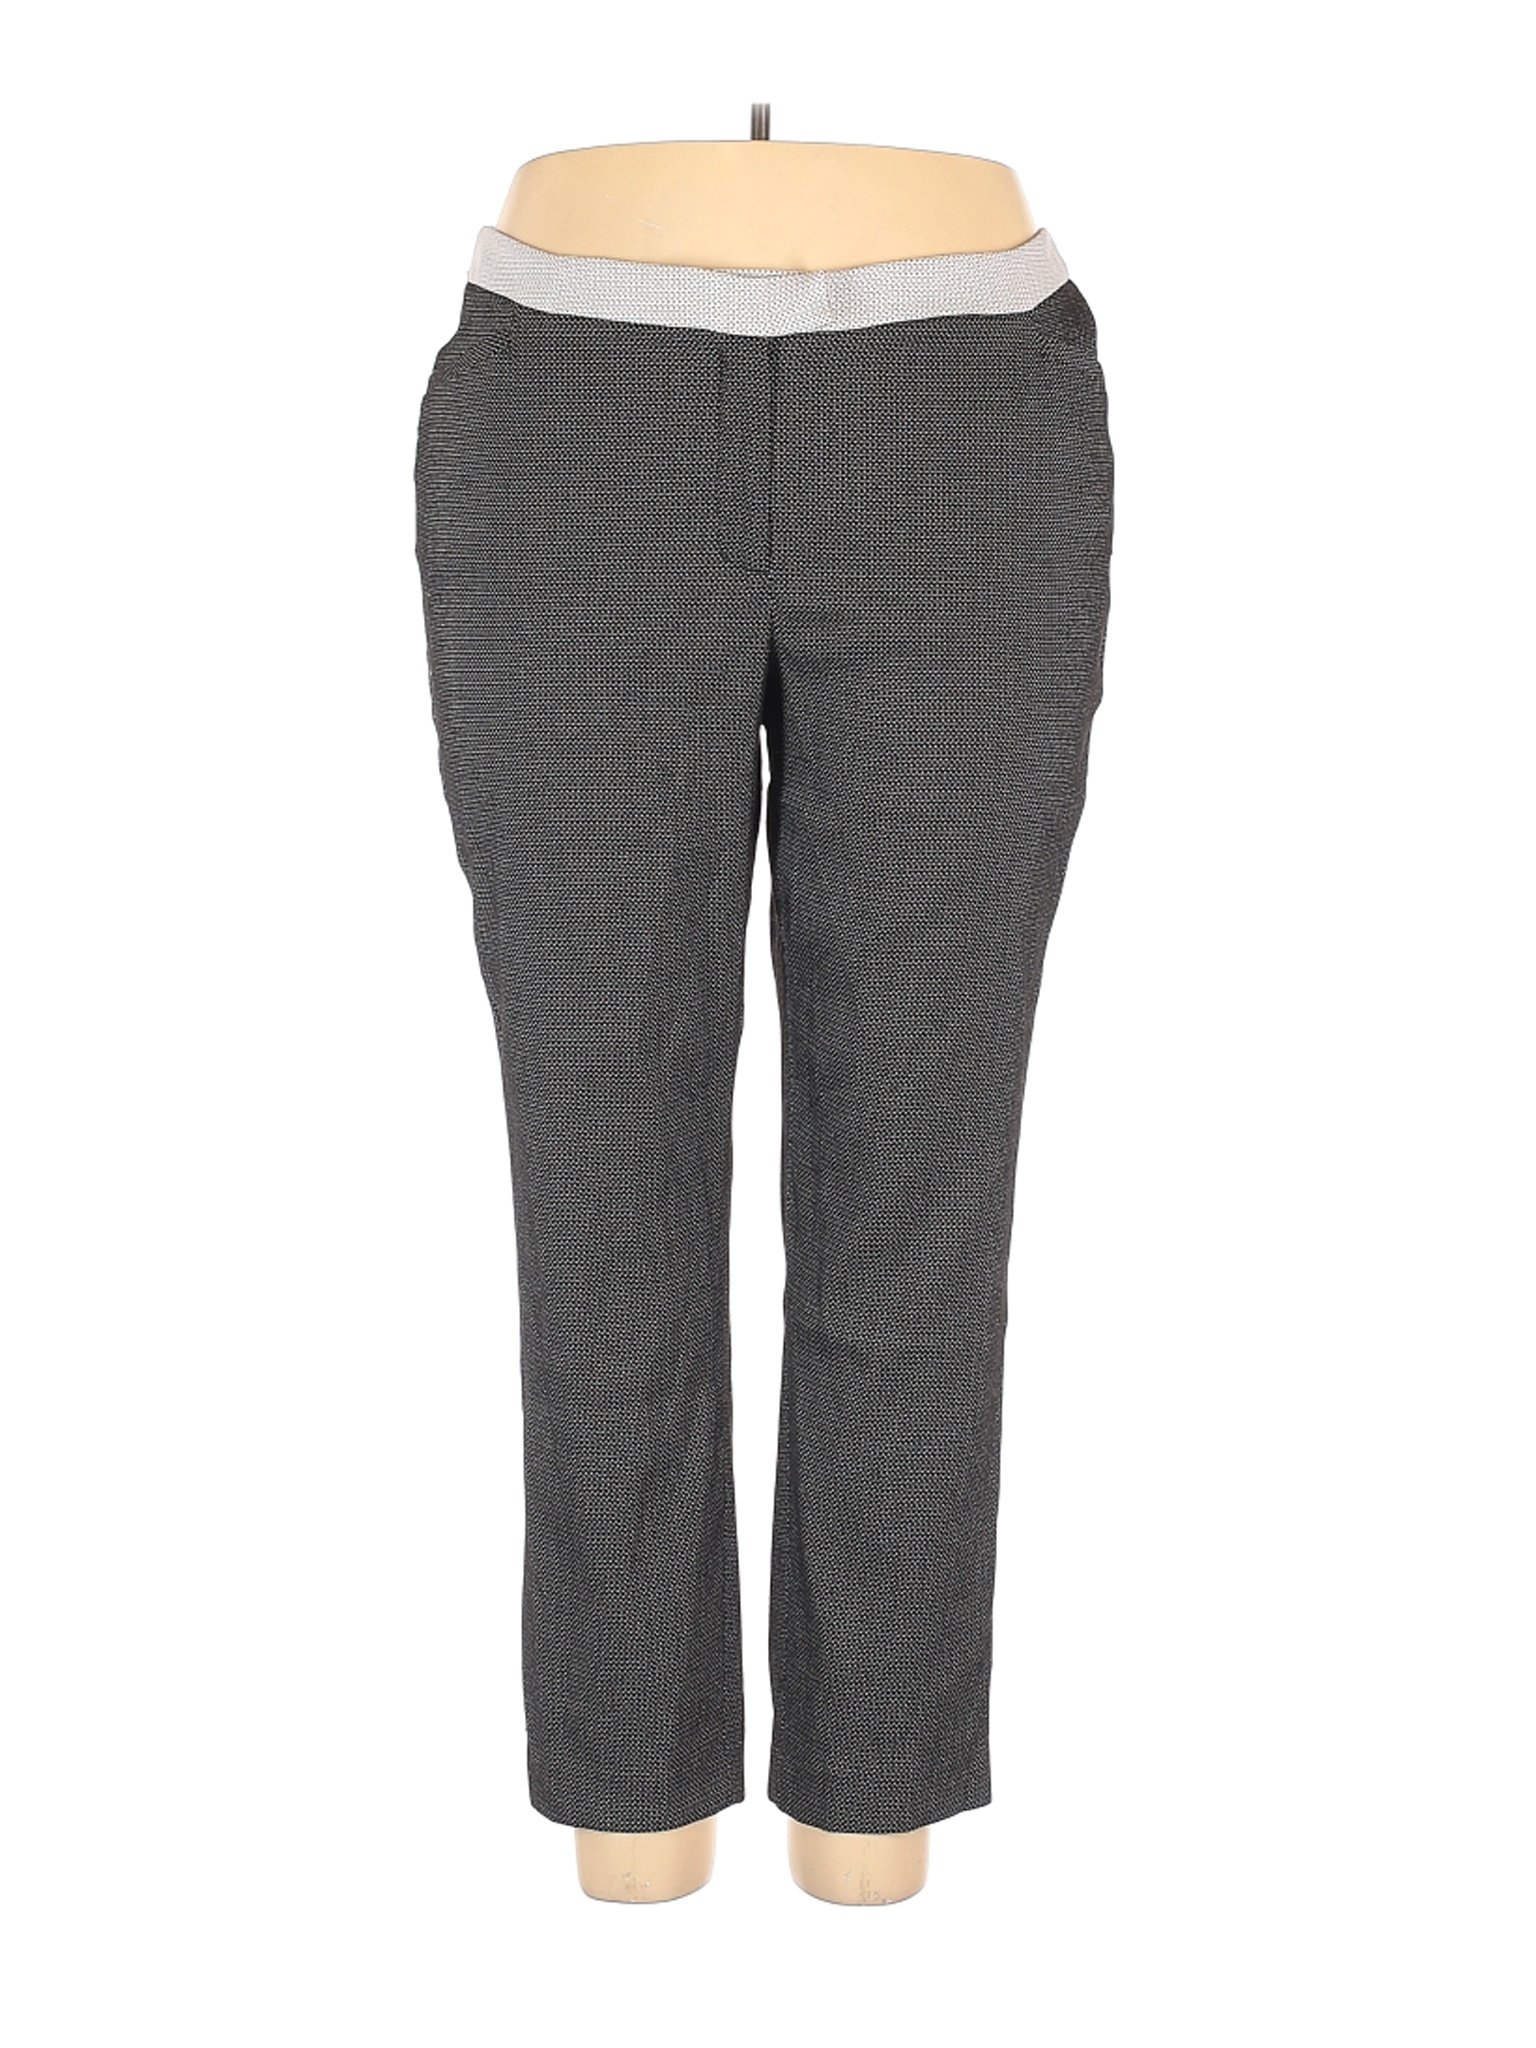 Lane Bryant Outlet Women Gray Dress Pants 22 Plus | eBay